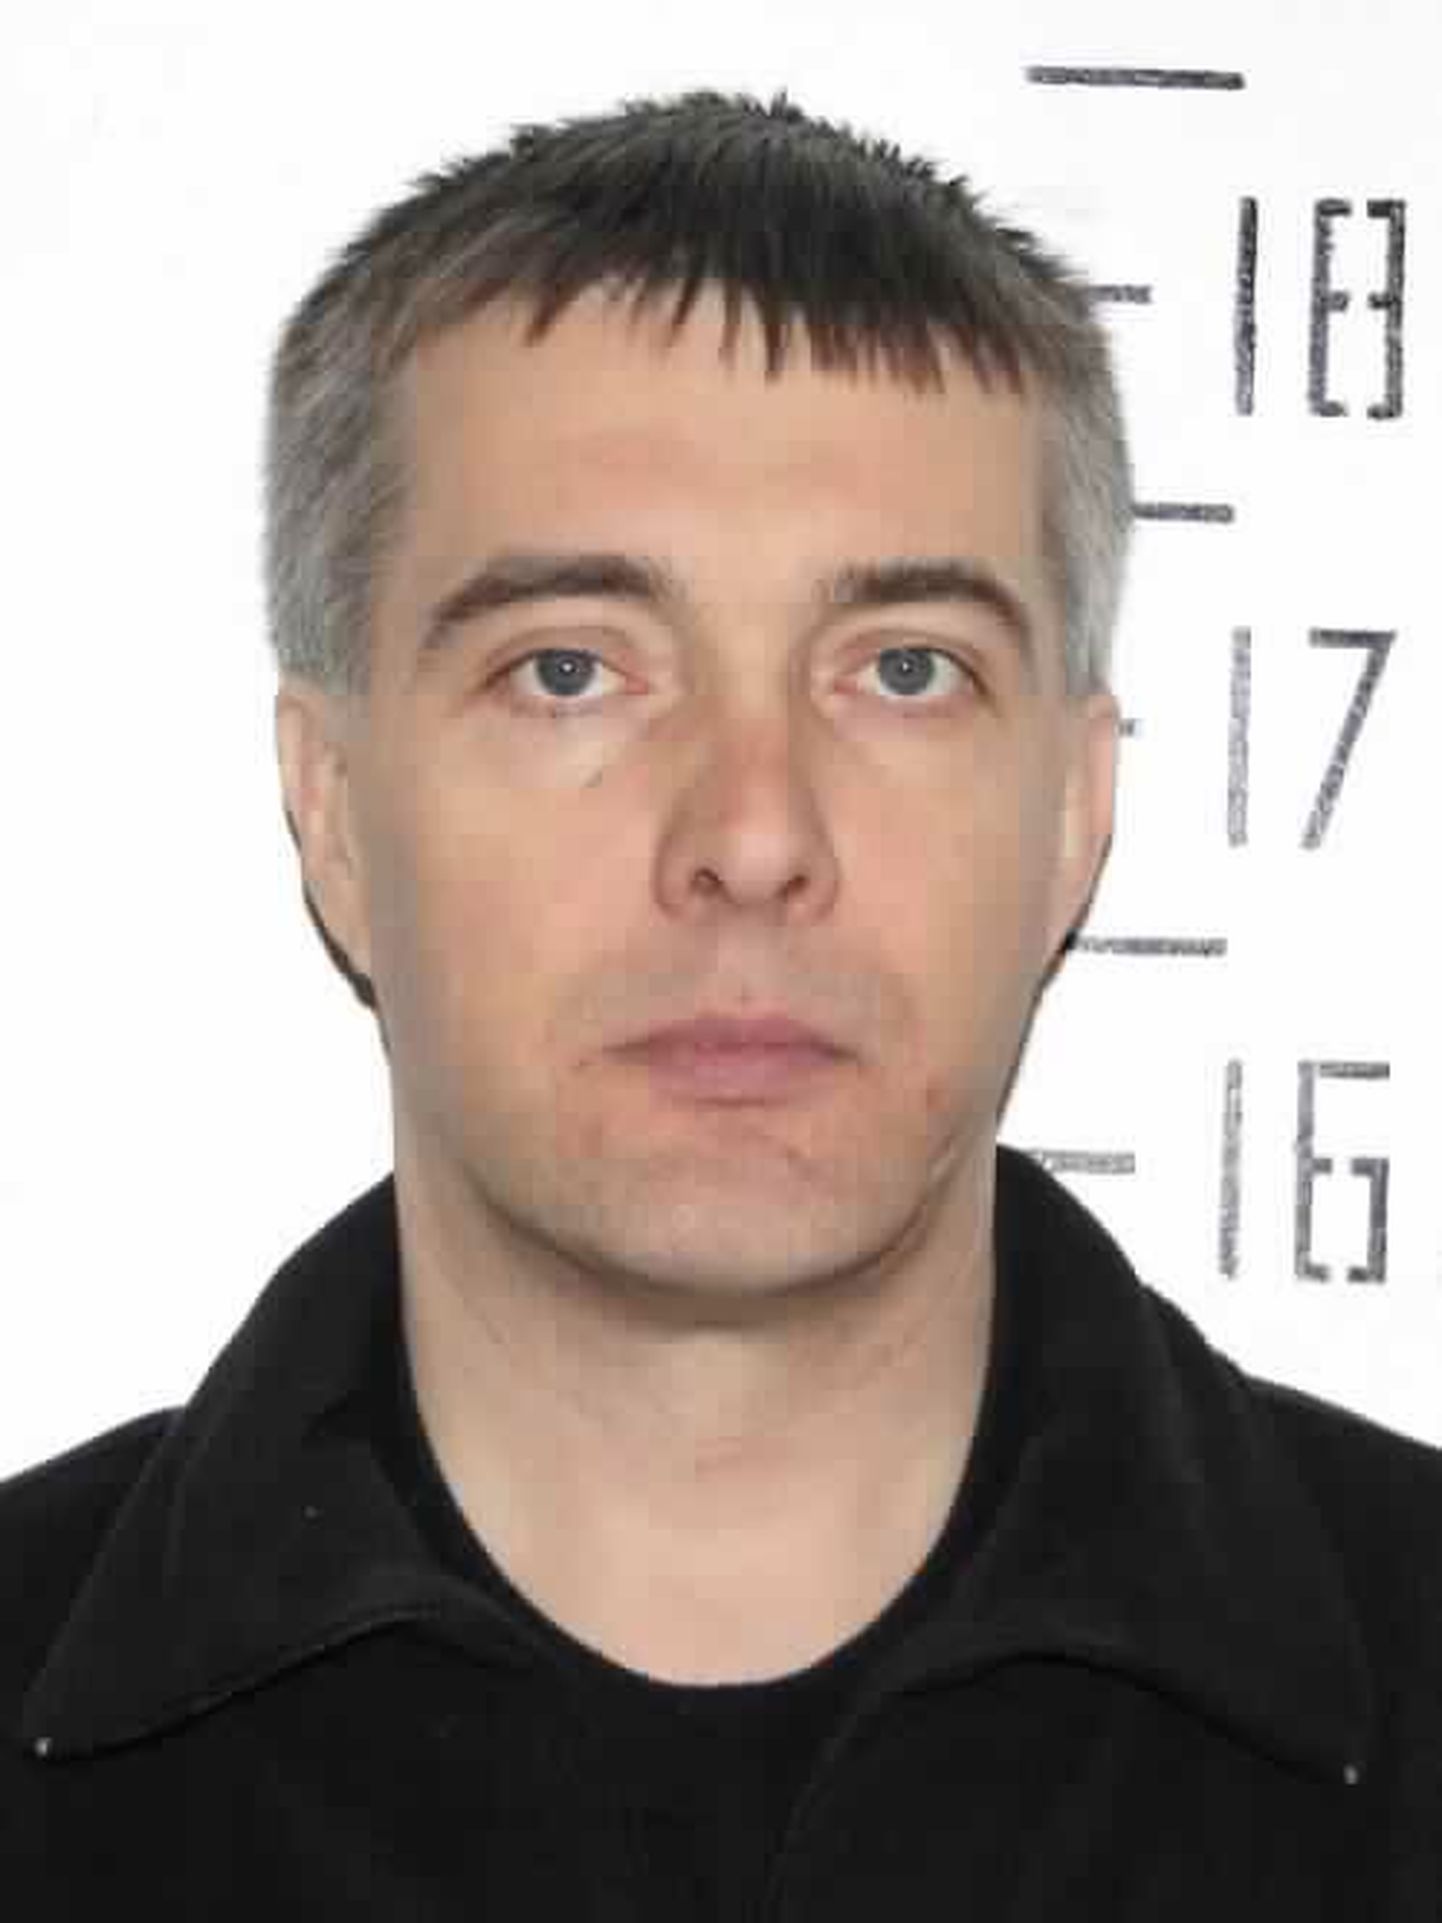 Полиция разыскивала 44-летнего Игоря Карпа с помощью СМИ.